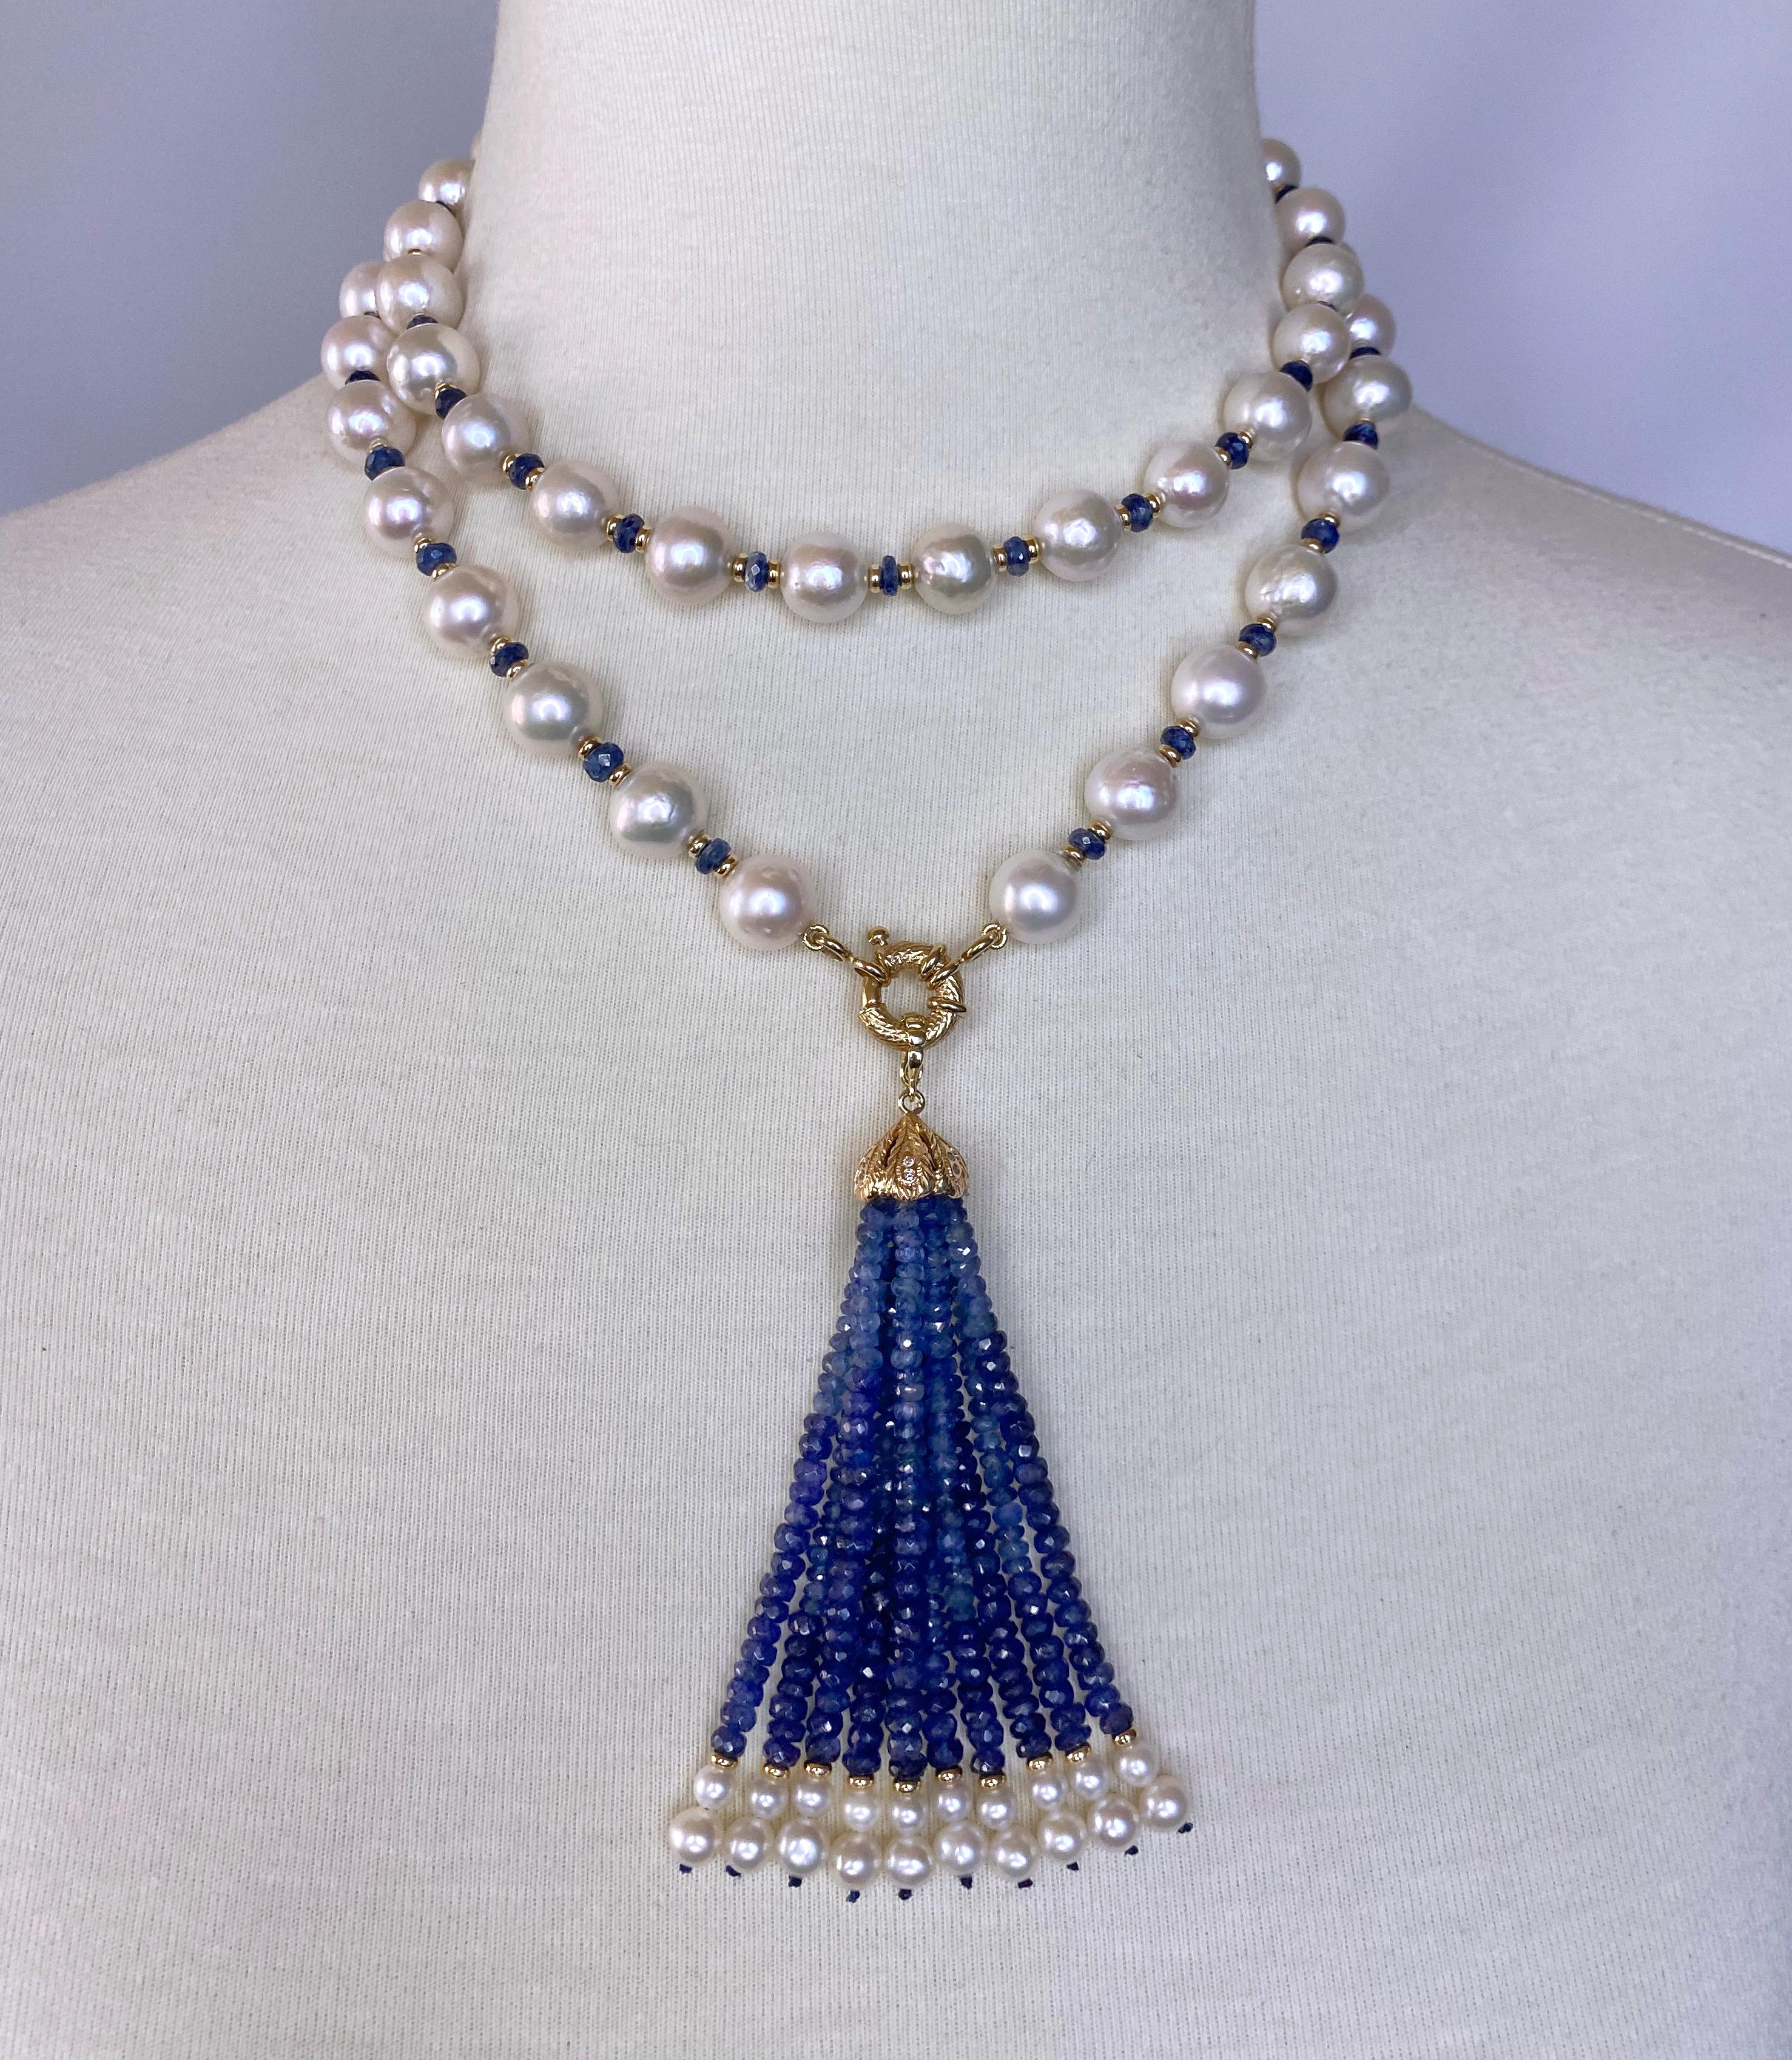 Magnifique Lariat / Sautoir tissé à la main par Marina J. Cette pièce est réalisée à partir de perles blanches de culture qui présentent un bel éclat irisé, de saphirs bleus facettés et d'éléments en or jaune 14k. En raison de leur nature pigmentée